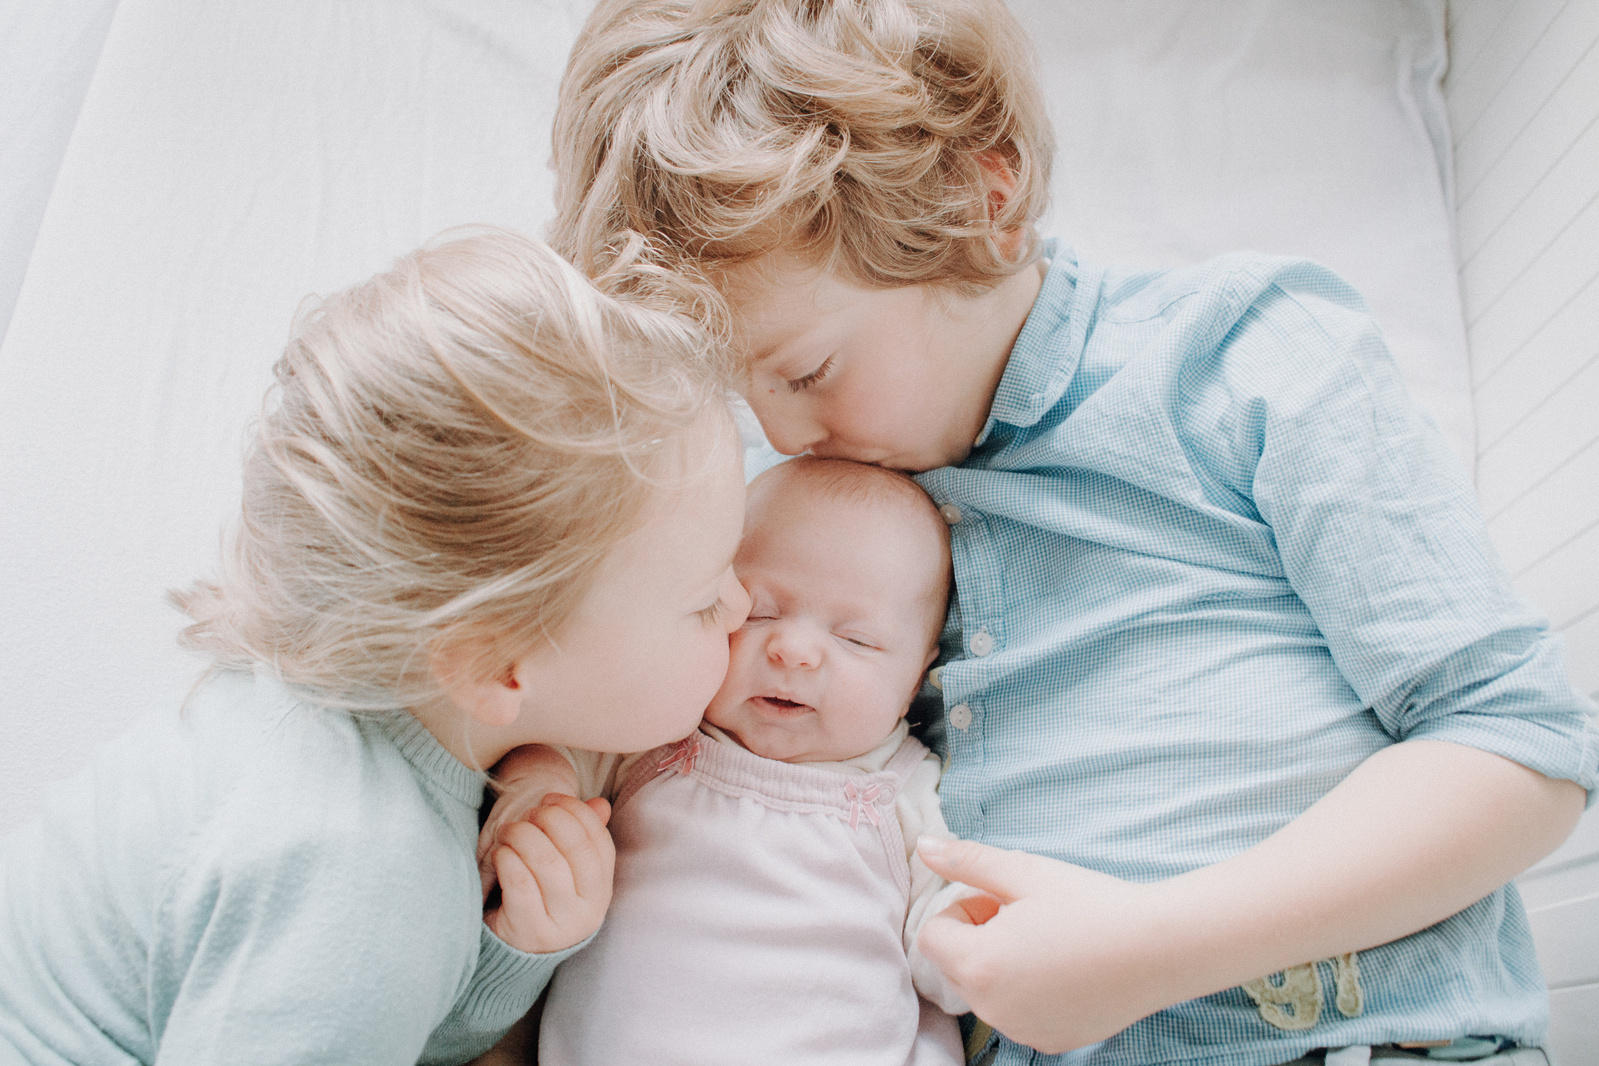 Wunderschöne Babyfotos, Neugeborenenfotos und Geschwisterfotos in Kiel und Umgebung. Eure Kinder sind einzigartig, lasst uns die Erinnerung an sie für immer aufbewahren. Familienfotografin Katharina Rose.